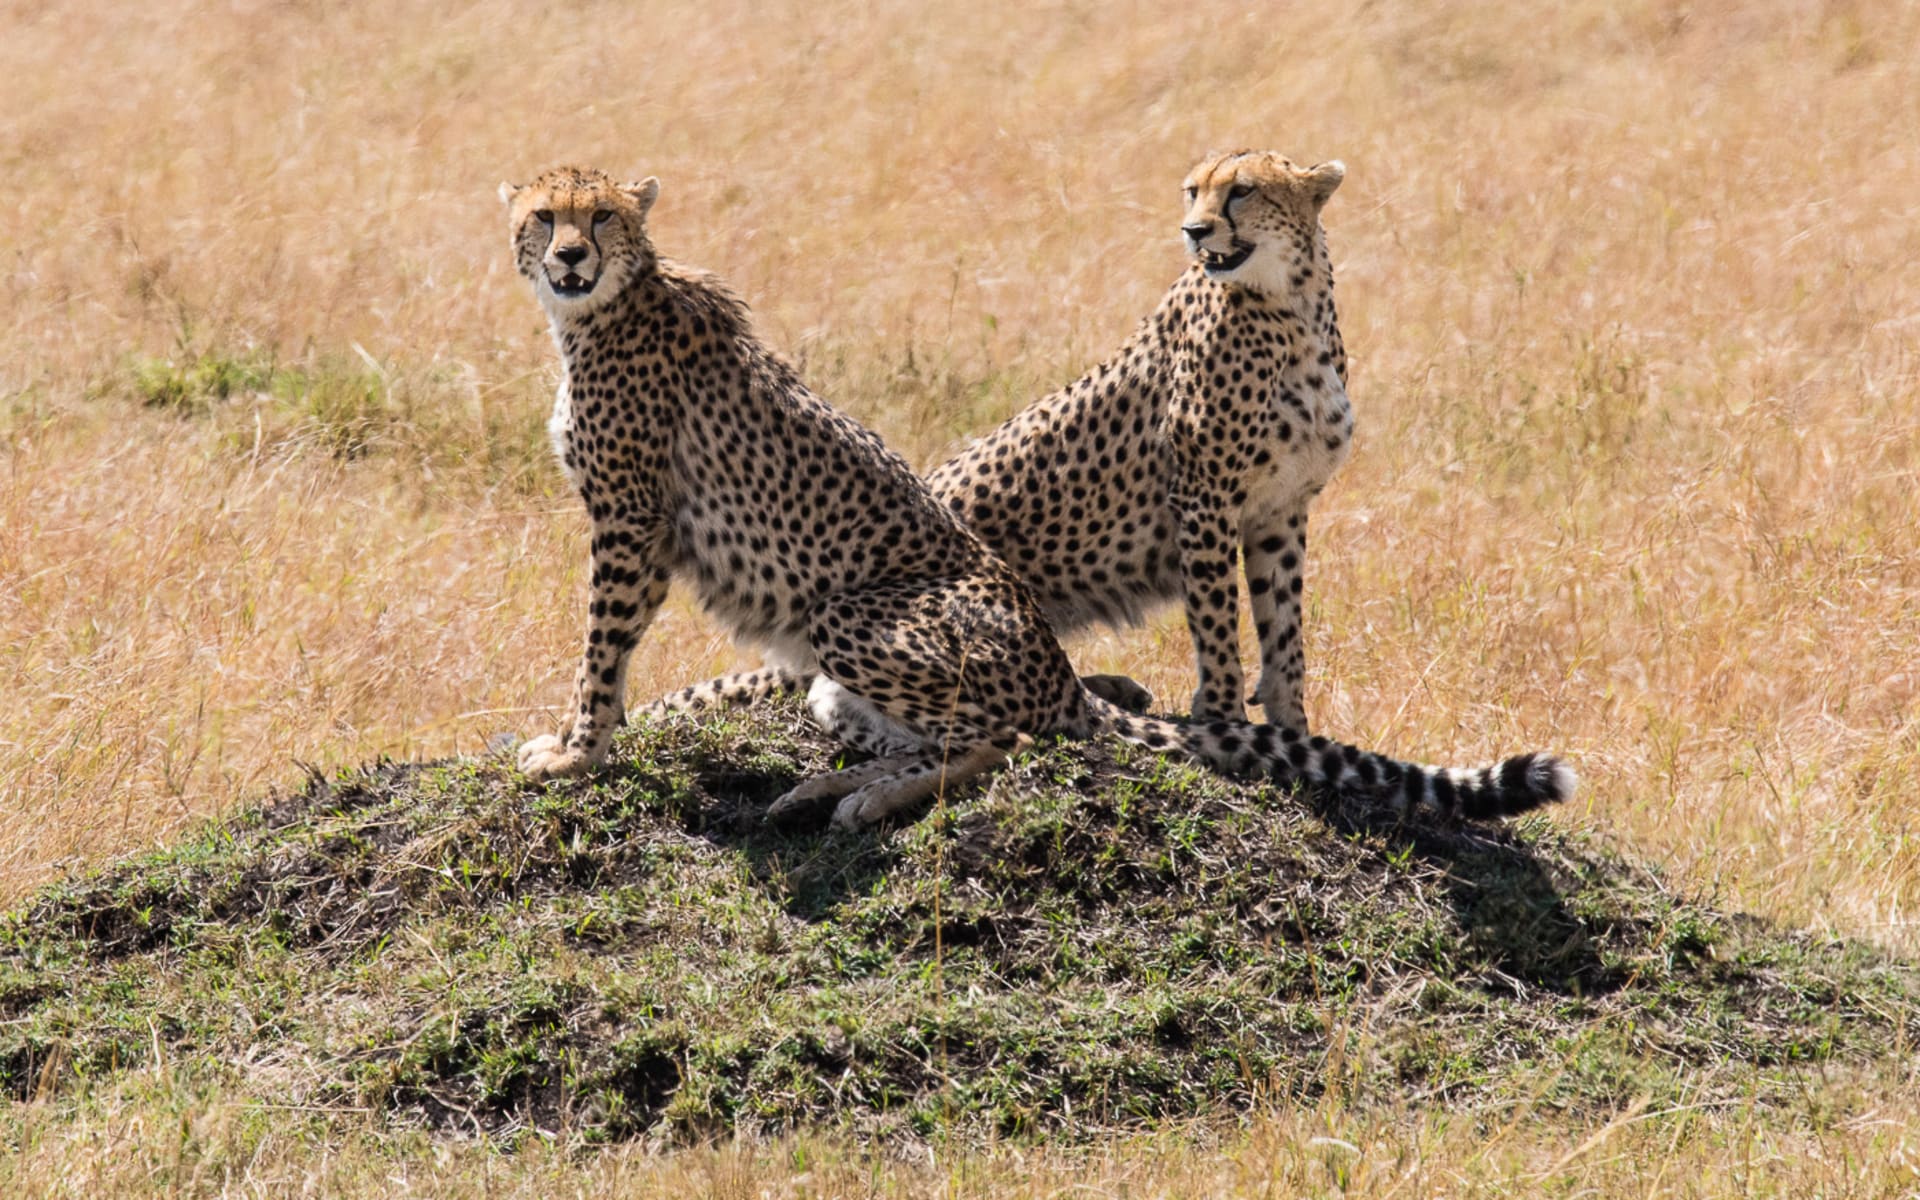 Masai_Mara_wildlife_2_dr2qb9